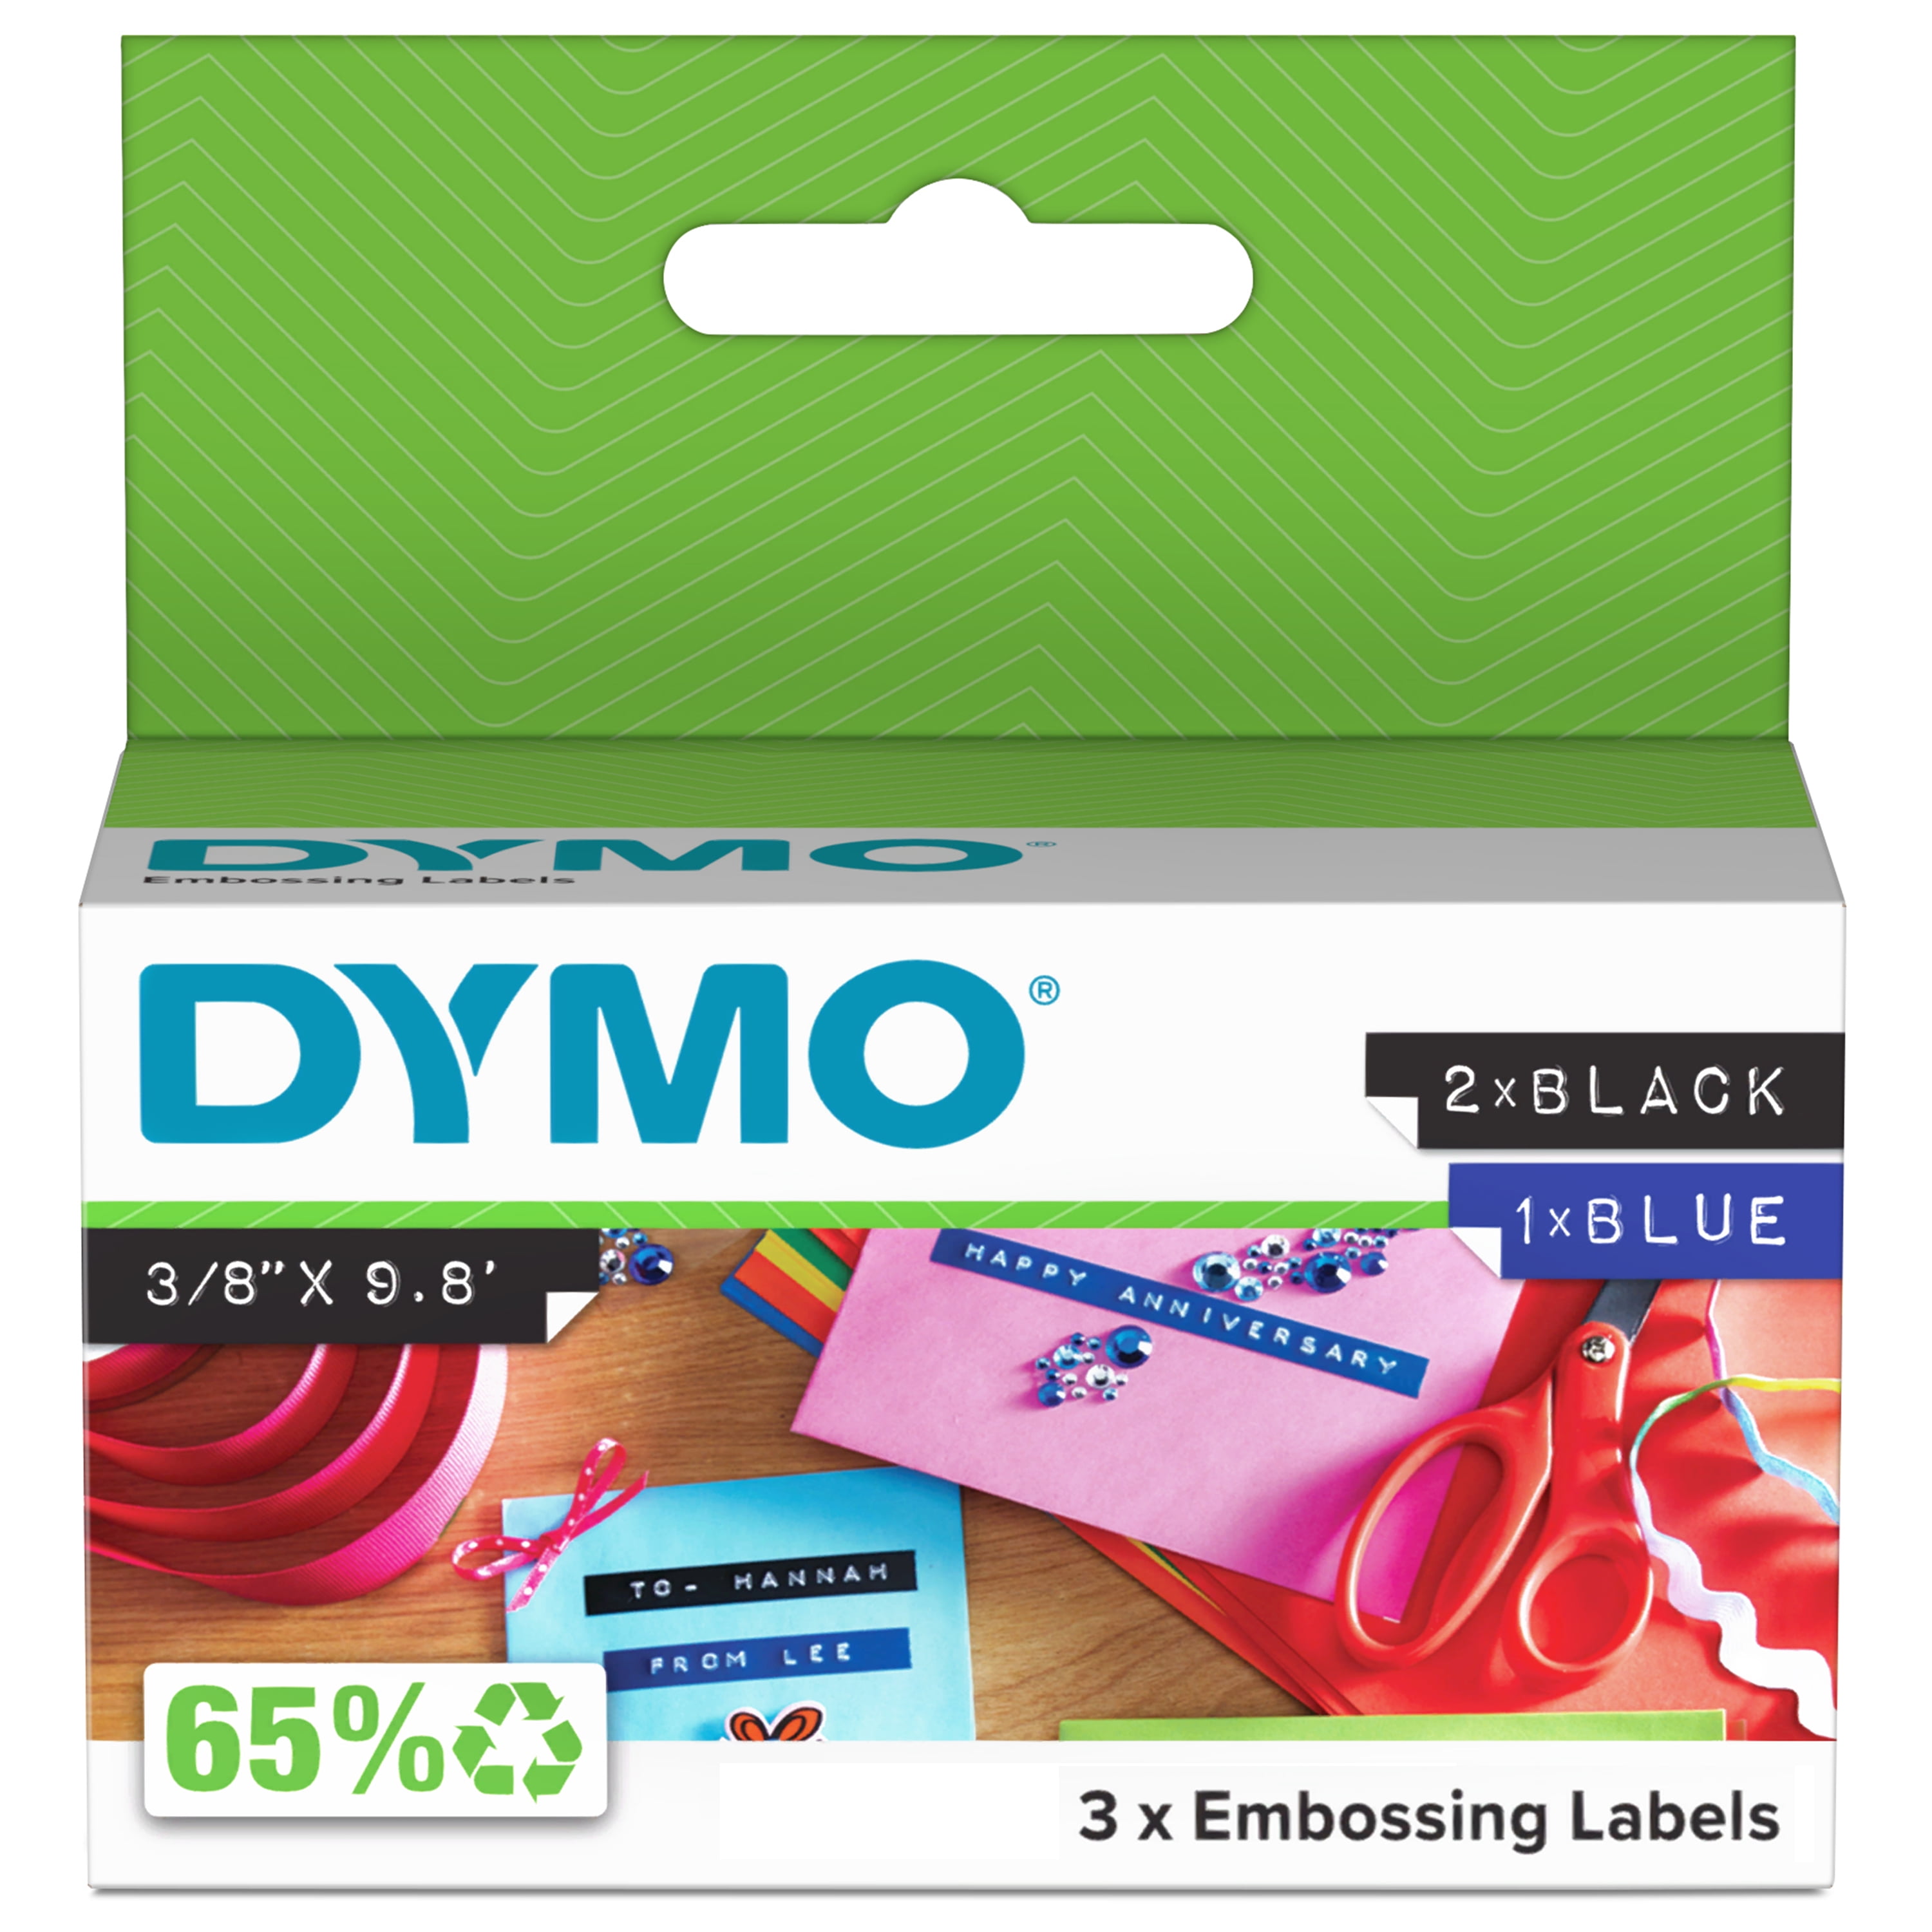 DYMO LabelManager 160e Portable Label Maker, Includes Silver Glitter D1  Label Tape 